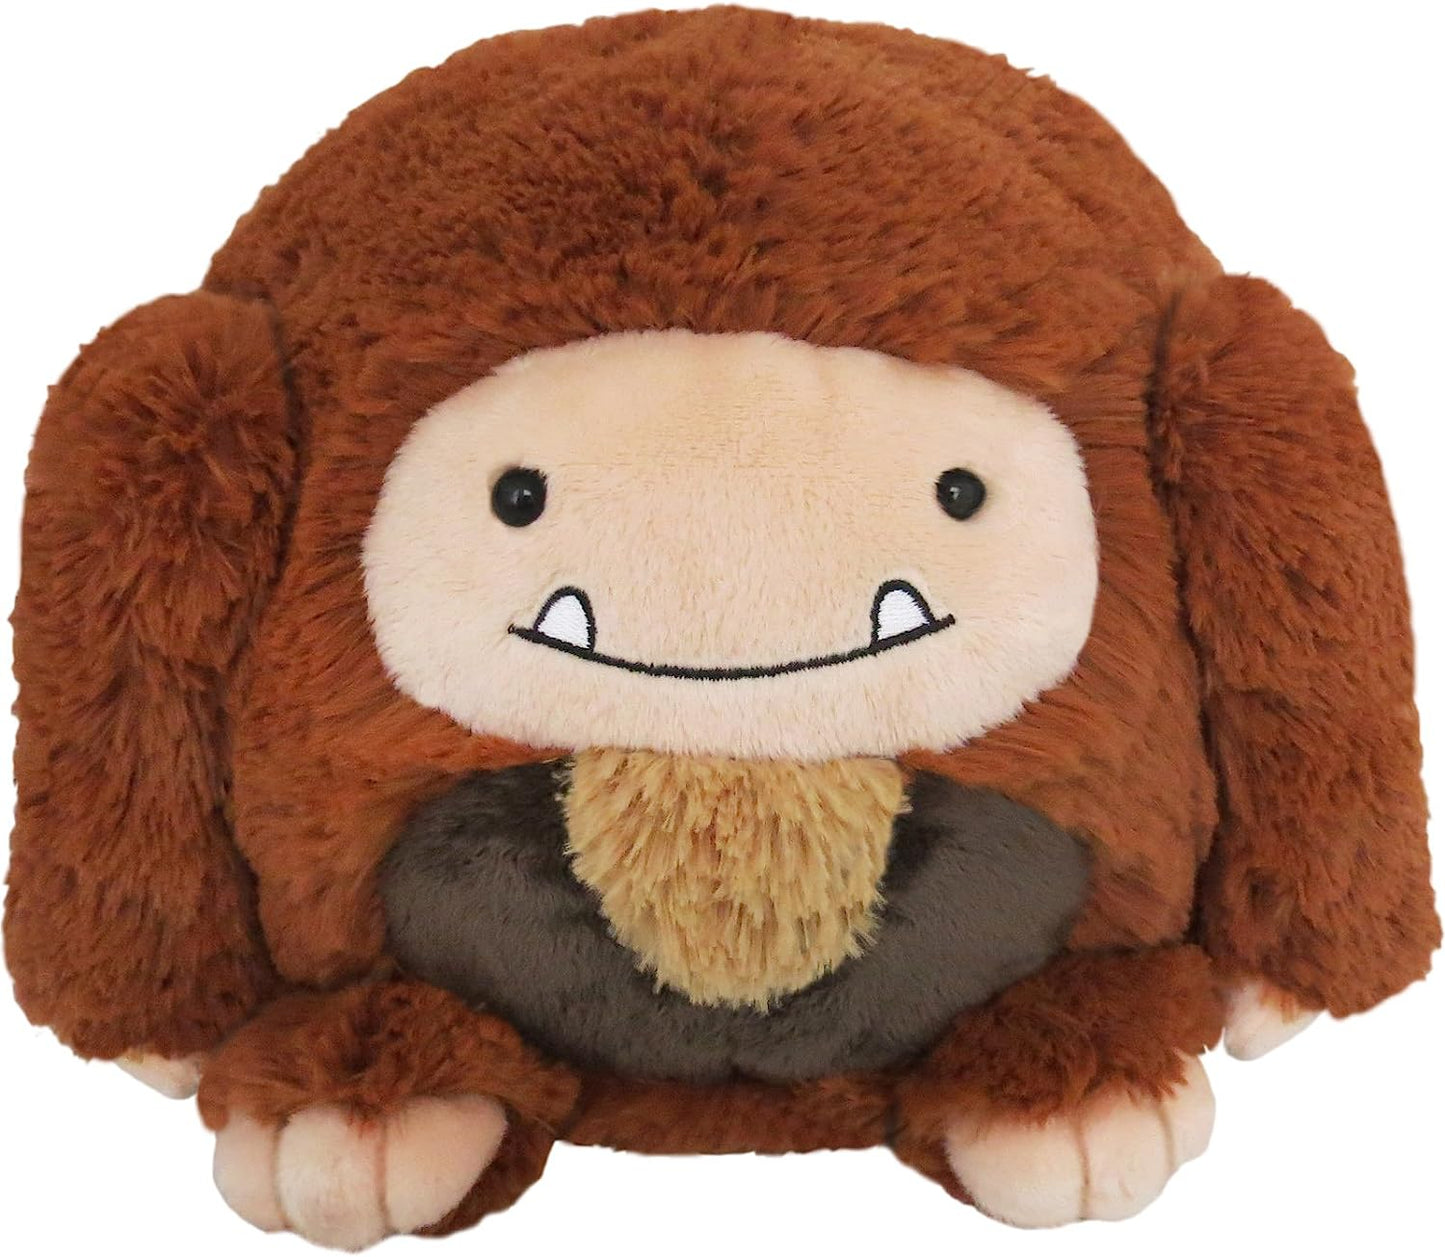 Mini Squishable - Bigfoot